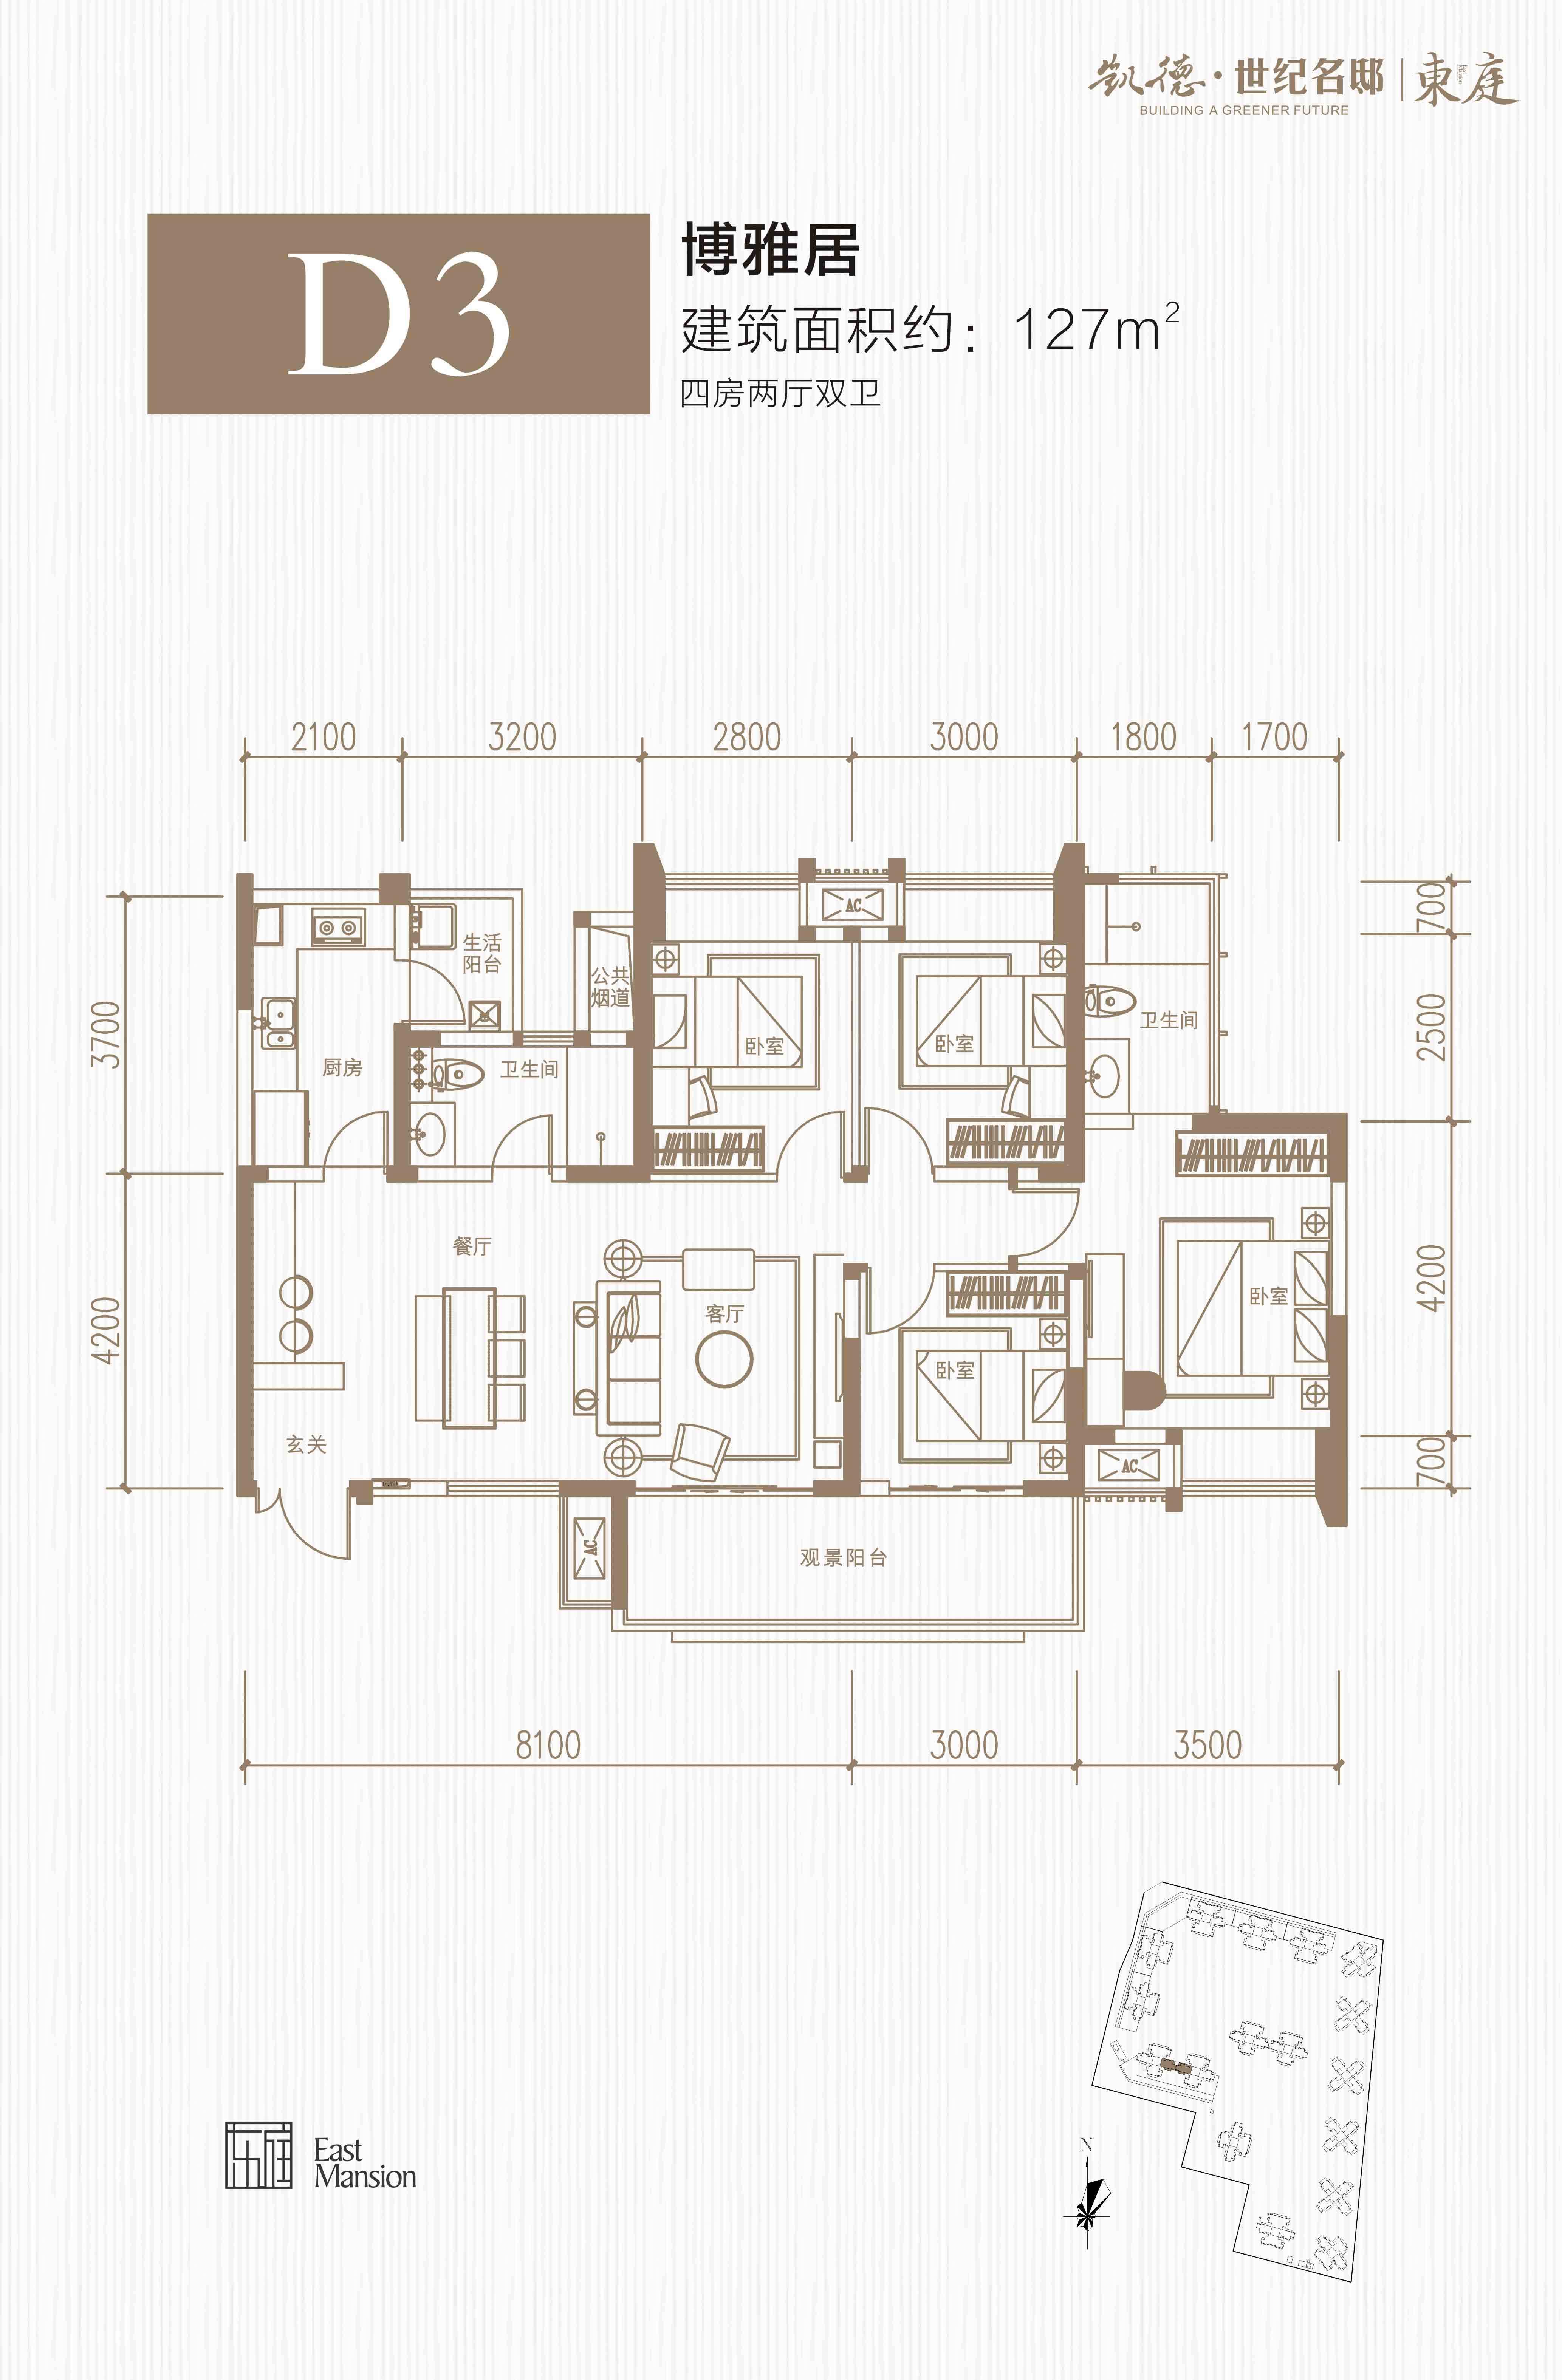 凯德世纪名邸2,9,16栋 D3户型-四室两厅两卫-127㎡